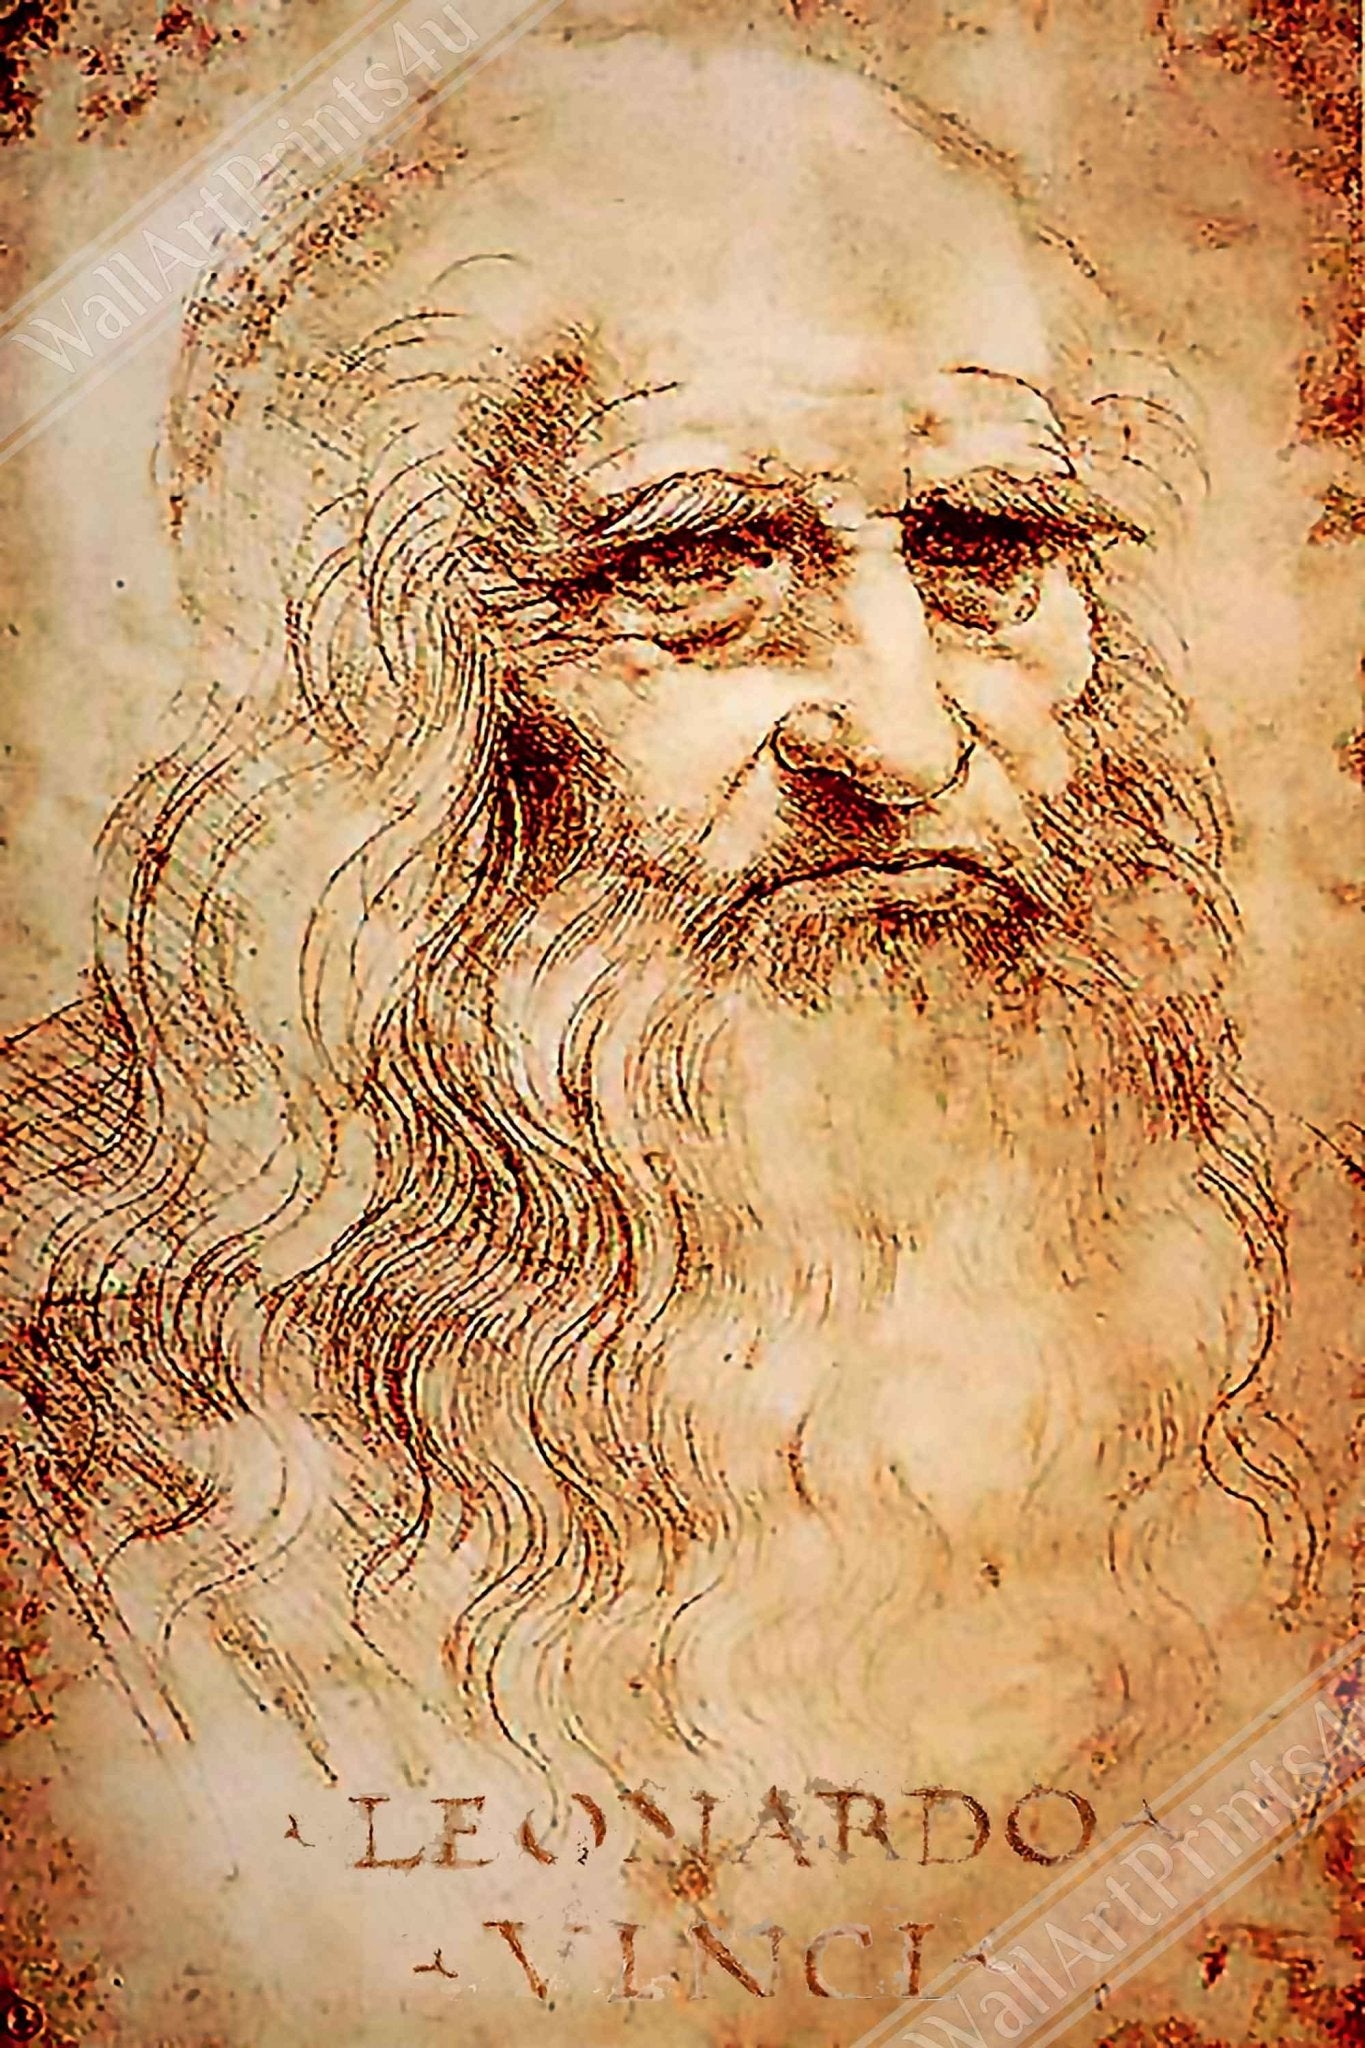 Leonardo Da Vinci Canvas, Self Portrait - Iconic Leonardo Da Vinci Canvas Print - Historical Genius - WallArtPrints4U